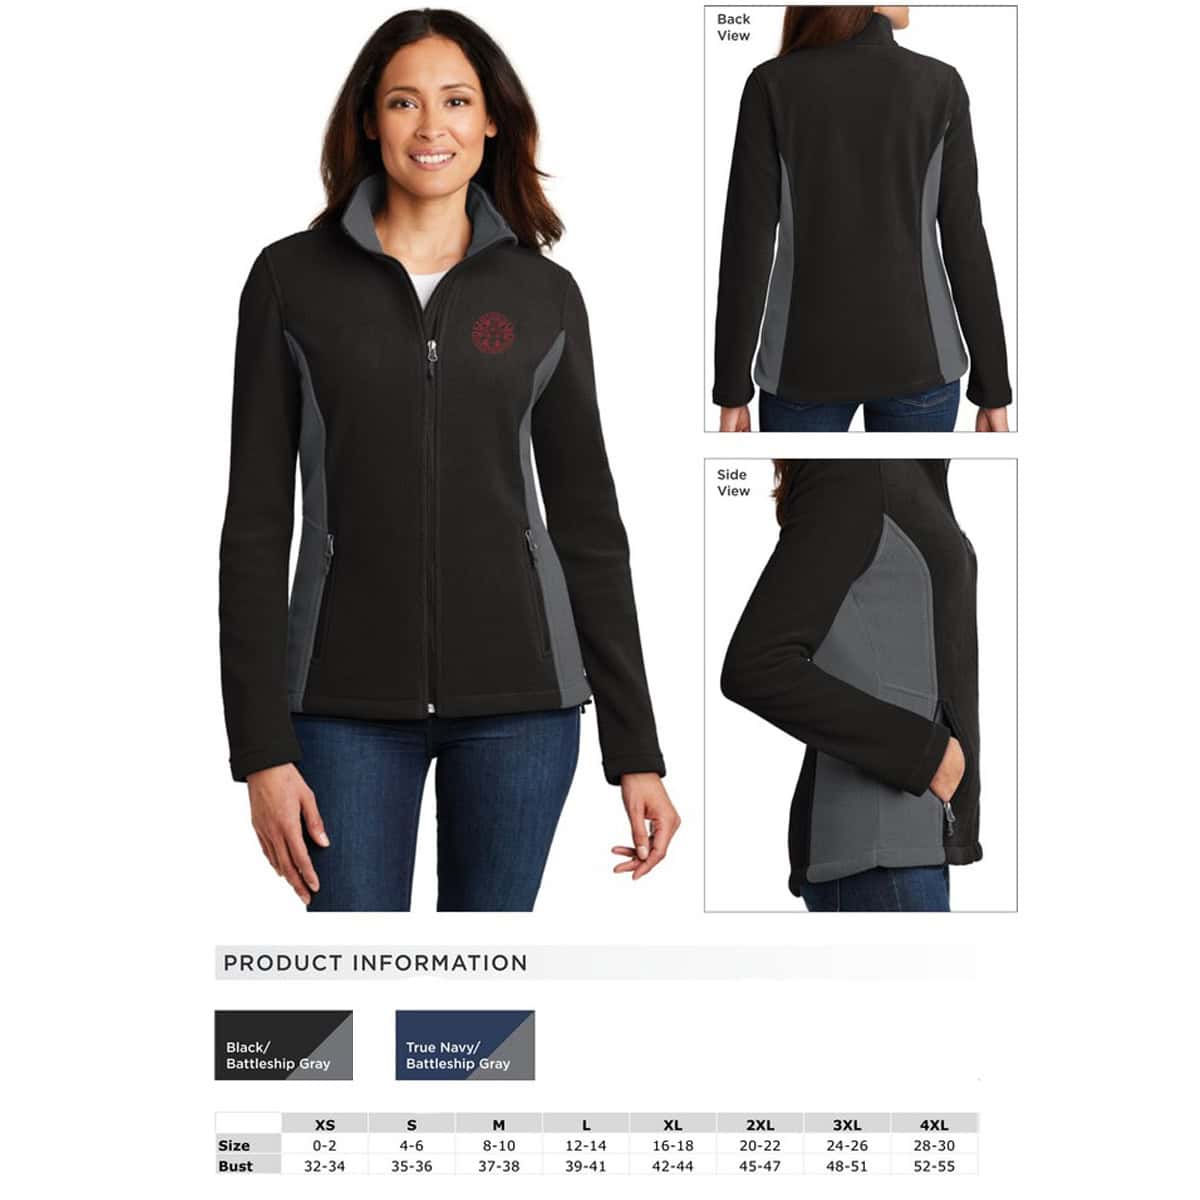 Port Authority ® Ladies Value Fleece Jacket. L217 M Iron Grey